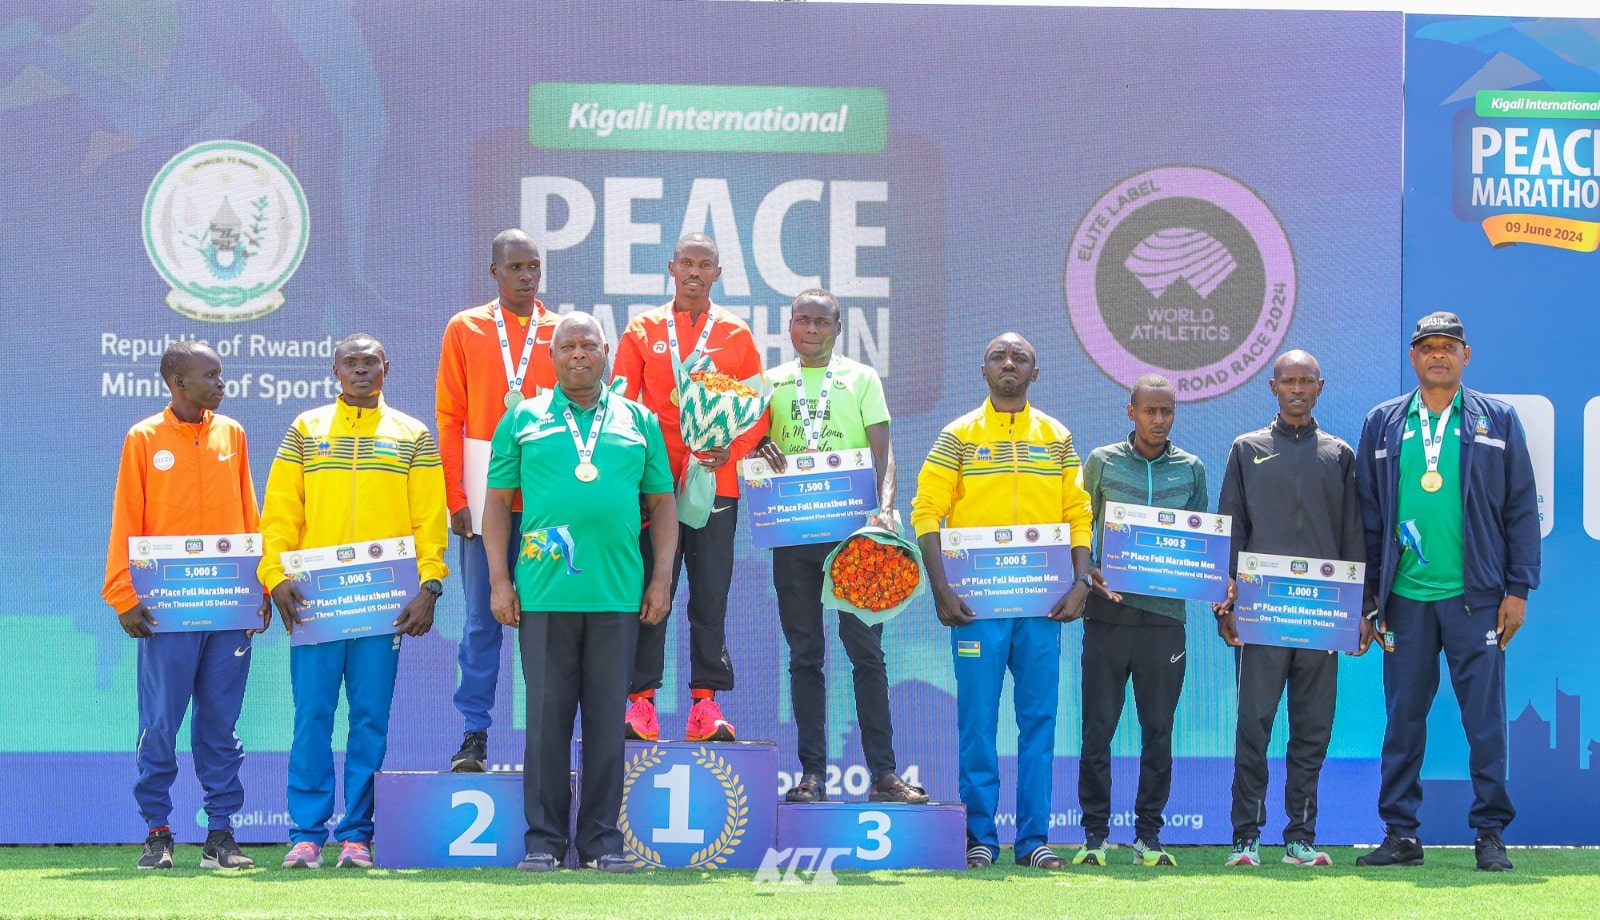 Featured image for Kenyan athletes dominate Kigali International Peace Marathon